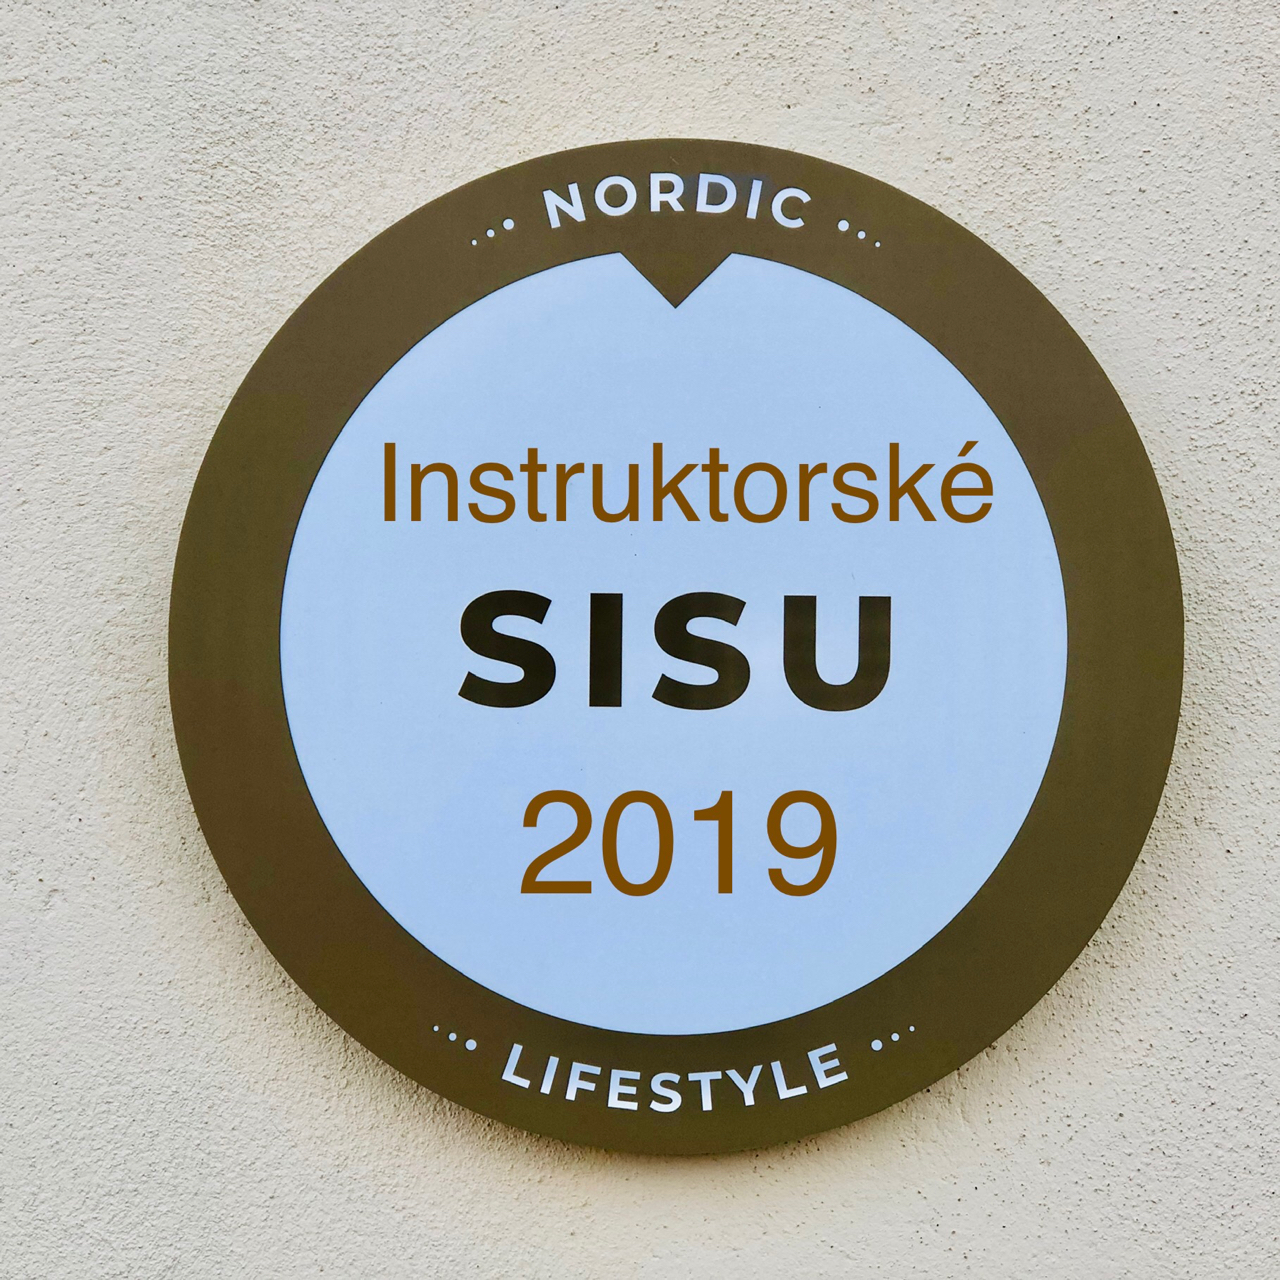 SISU je pravidelný každoroční sraz instruktorů sítě Nordic Walking Point